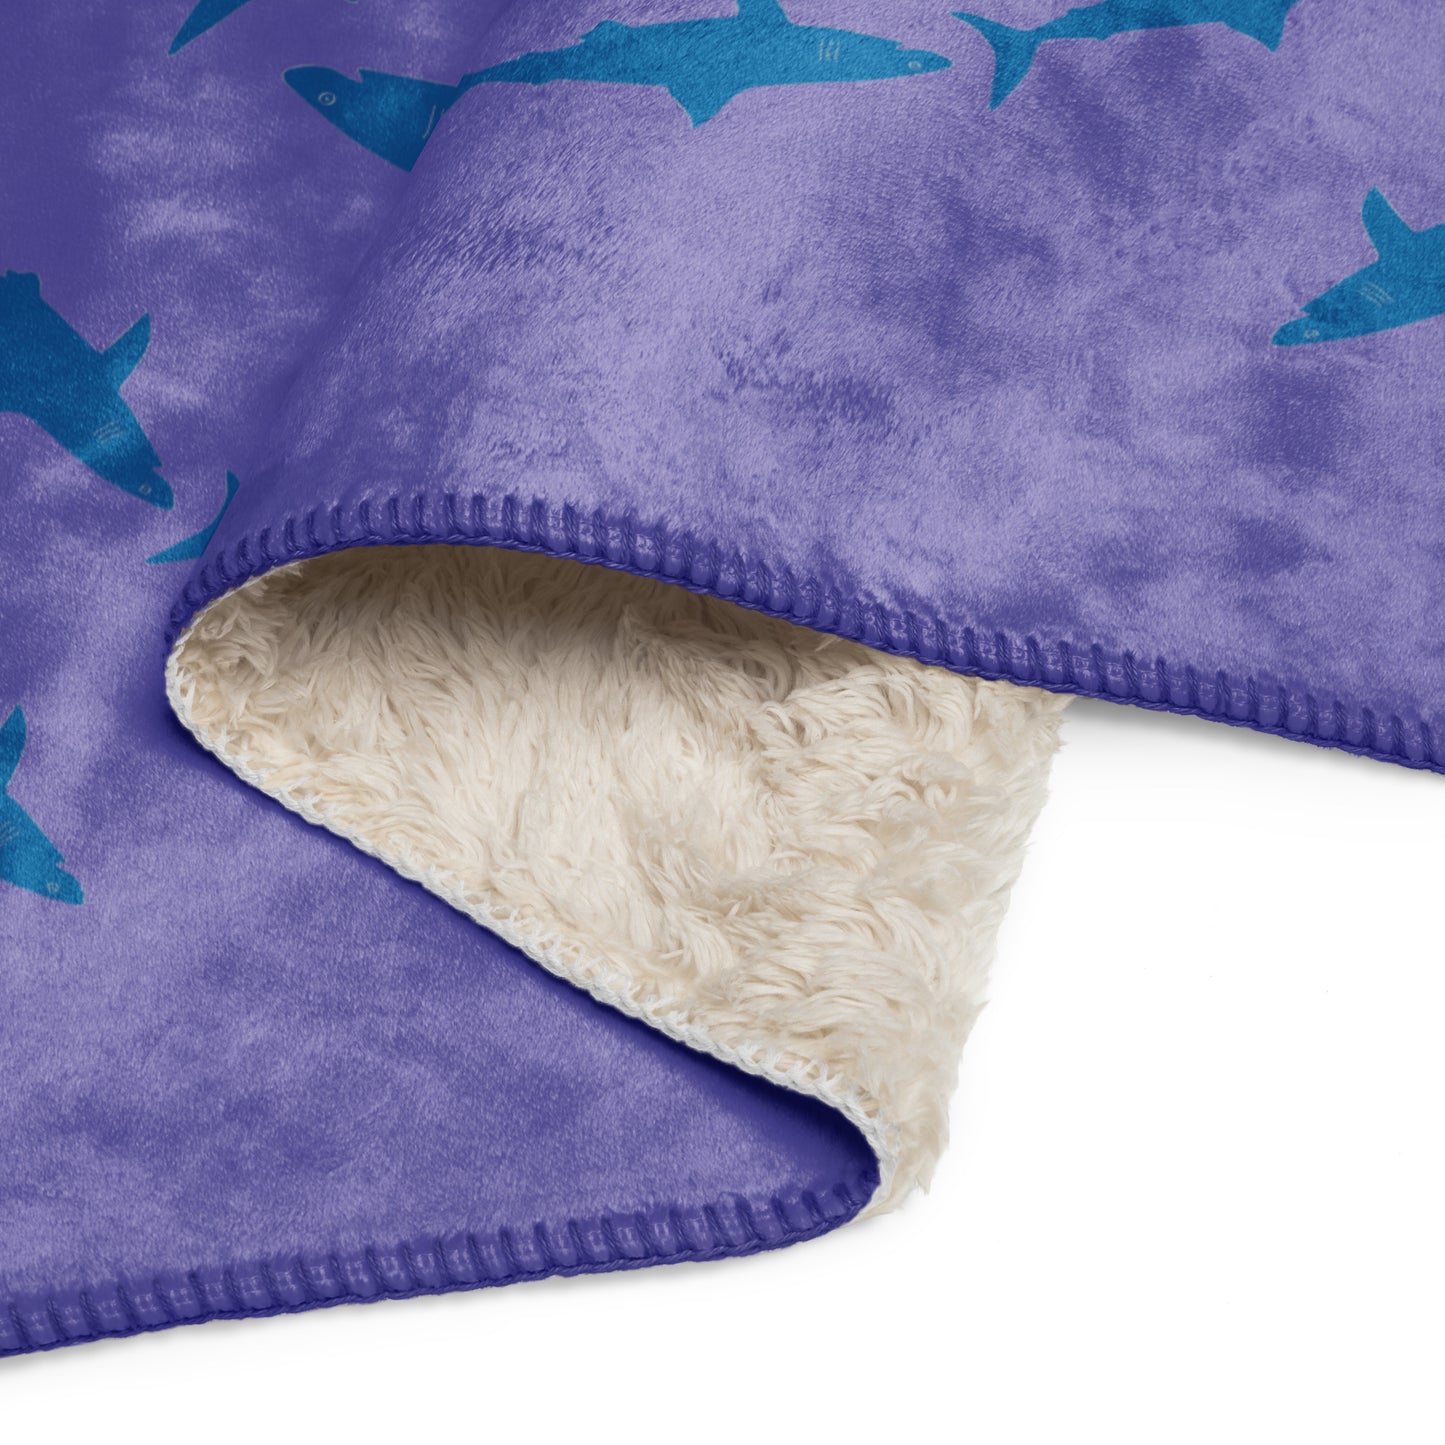 Shark Sherpa blanket - Blue on Purple